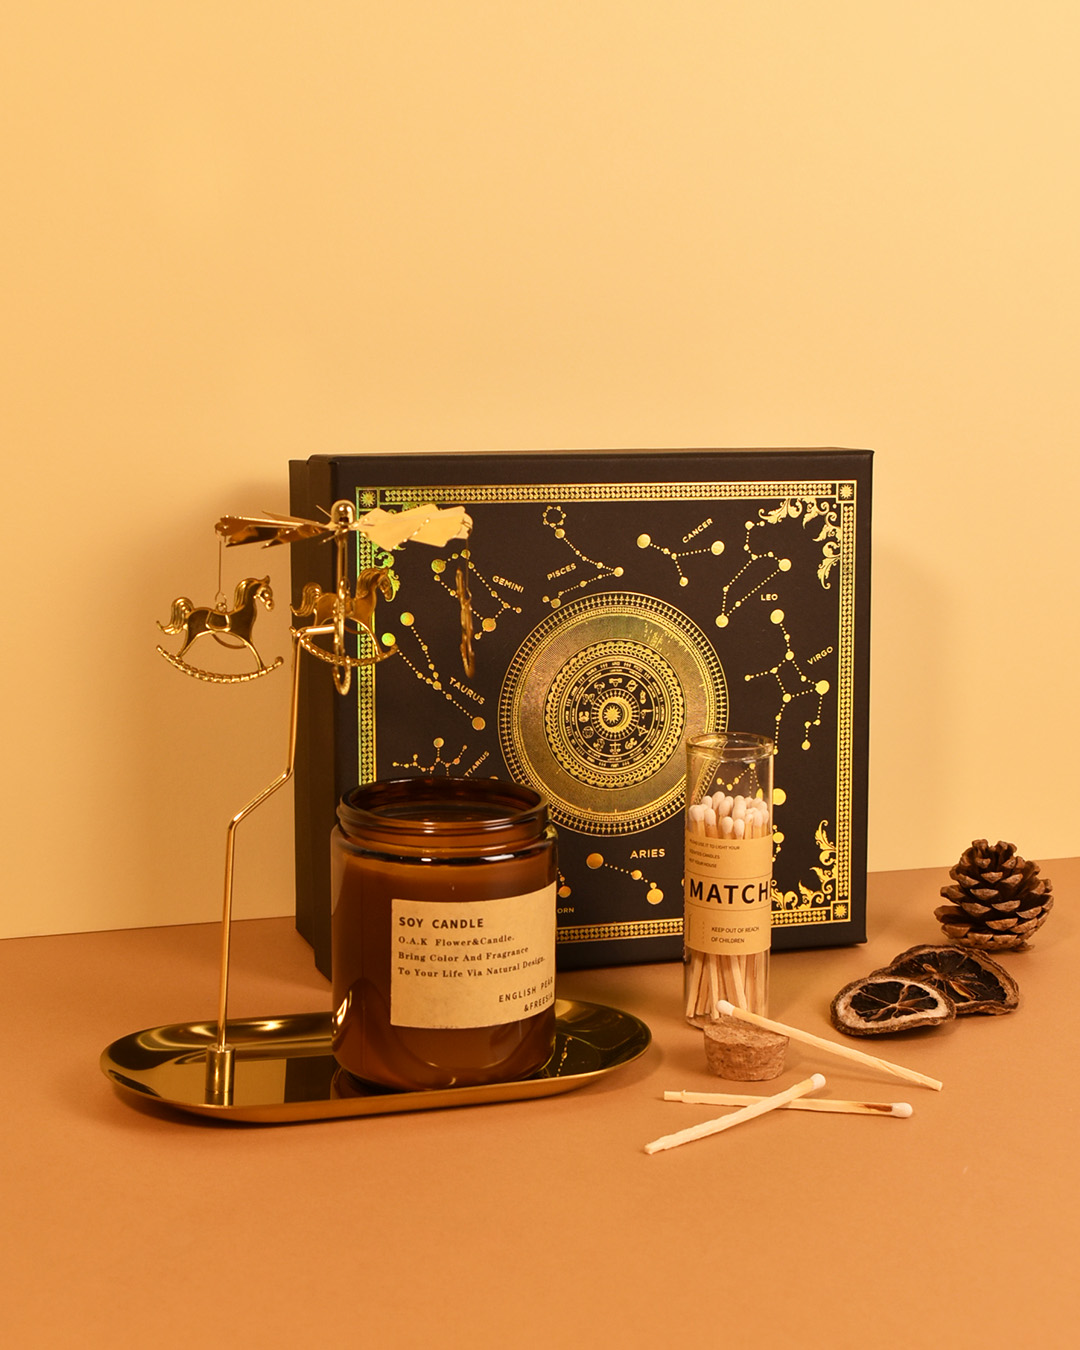 Carousel Horse Fragrance Gift Box